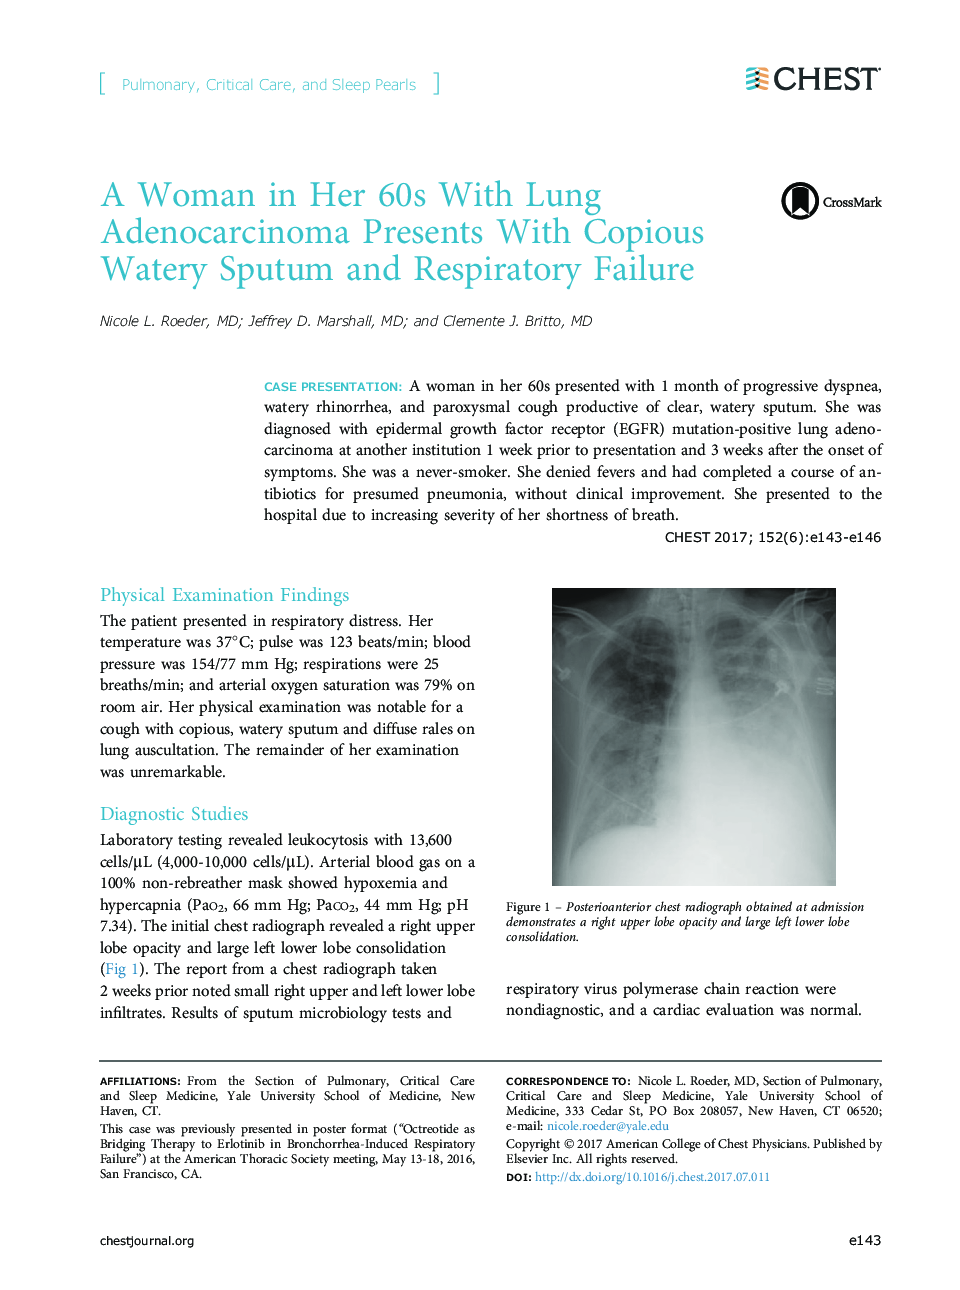 یک زن در 60 سالگی با آدنوکارسینوم ریه با خلط آبدار و نارسایی تنفسی 